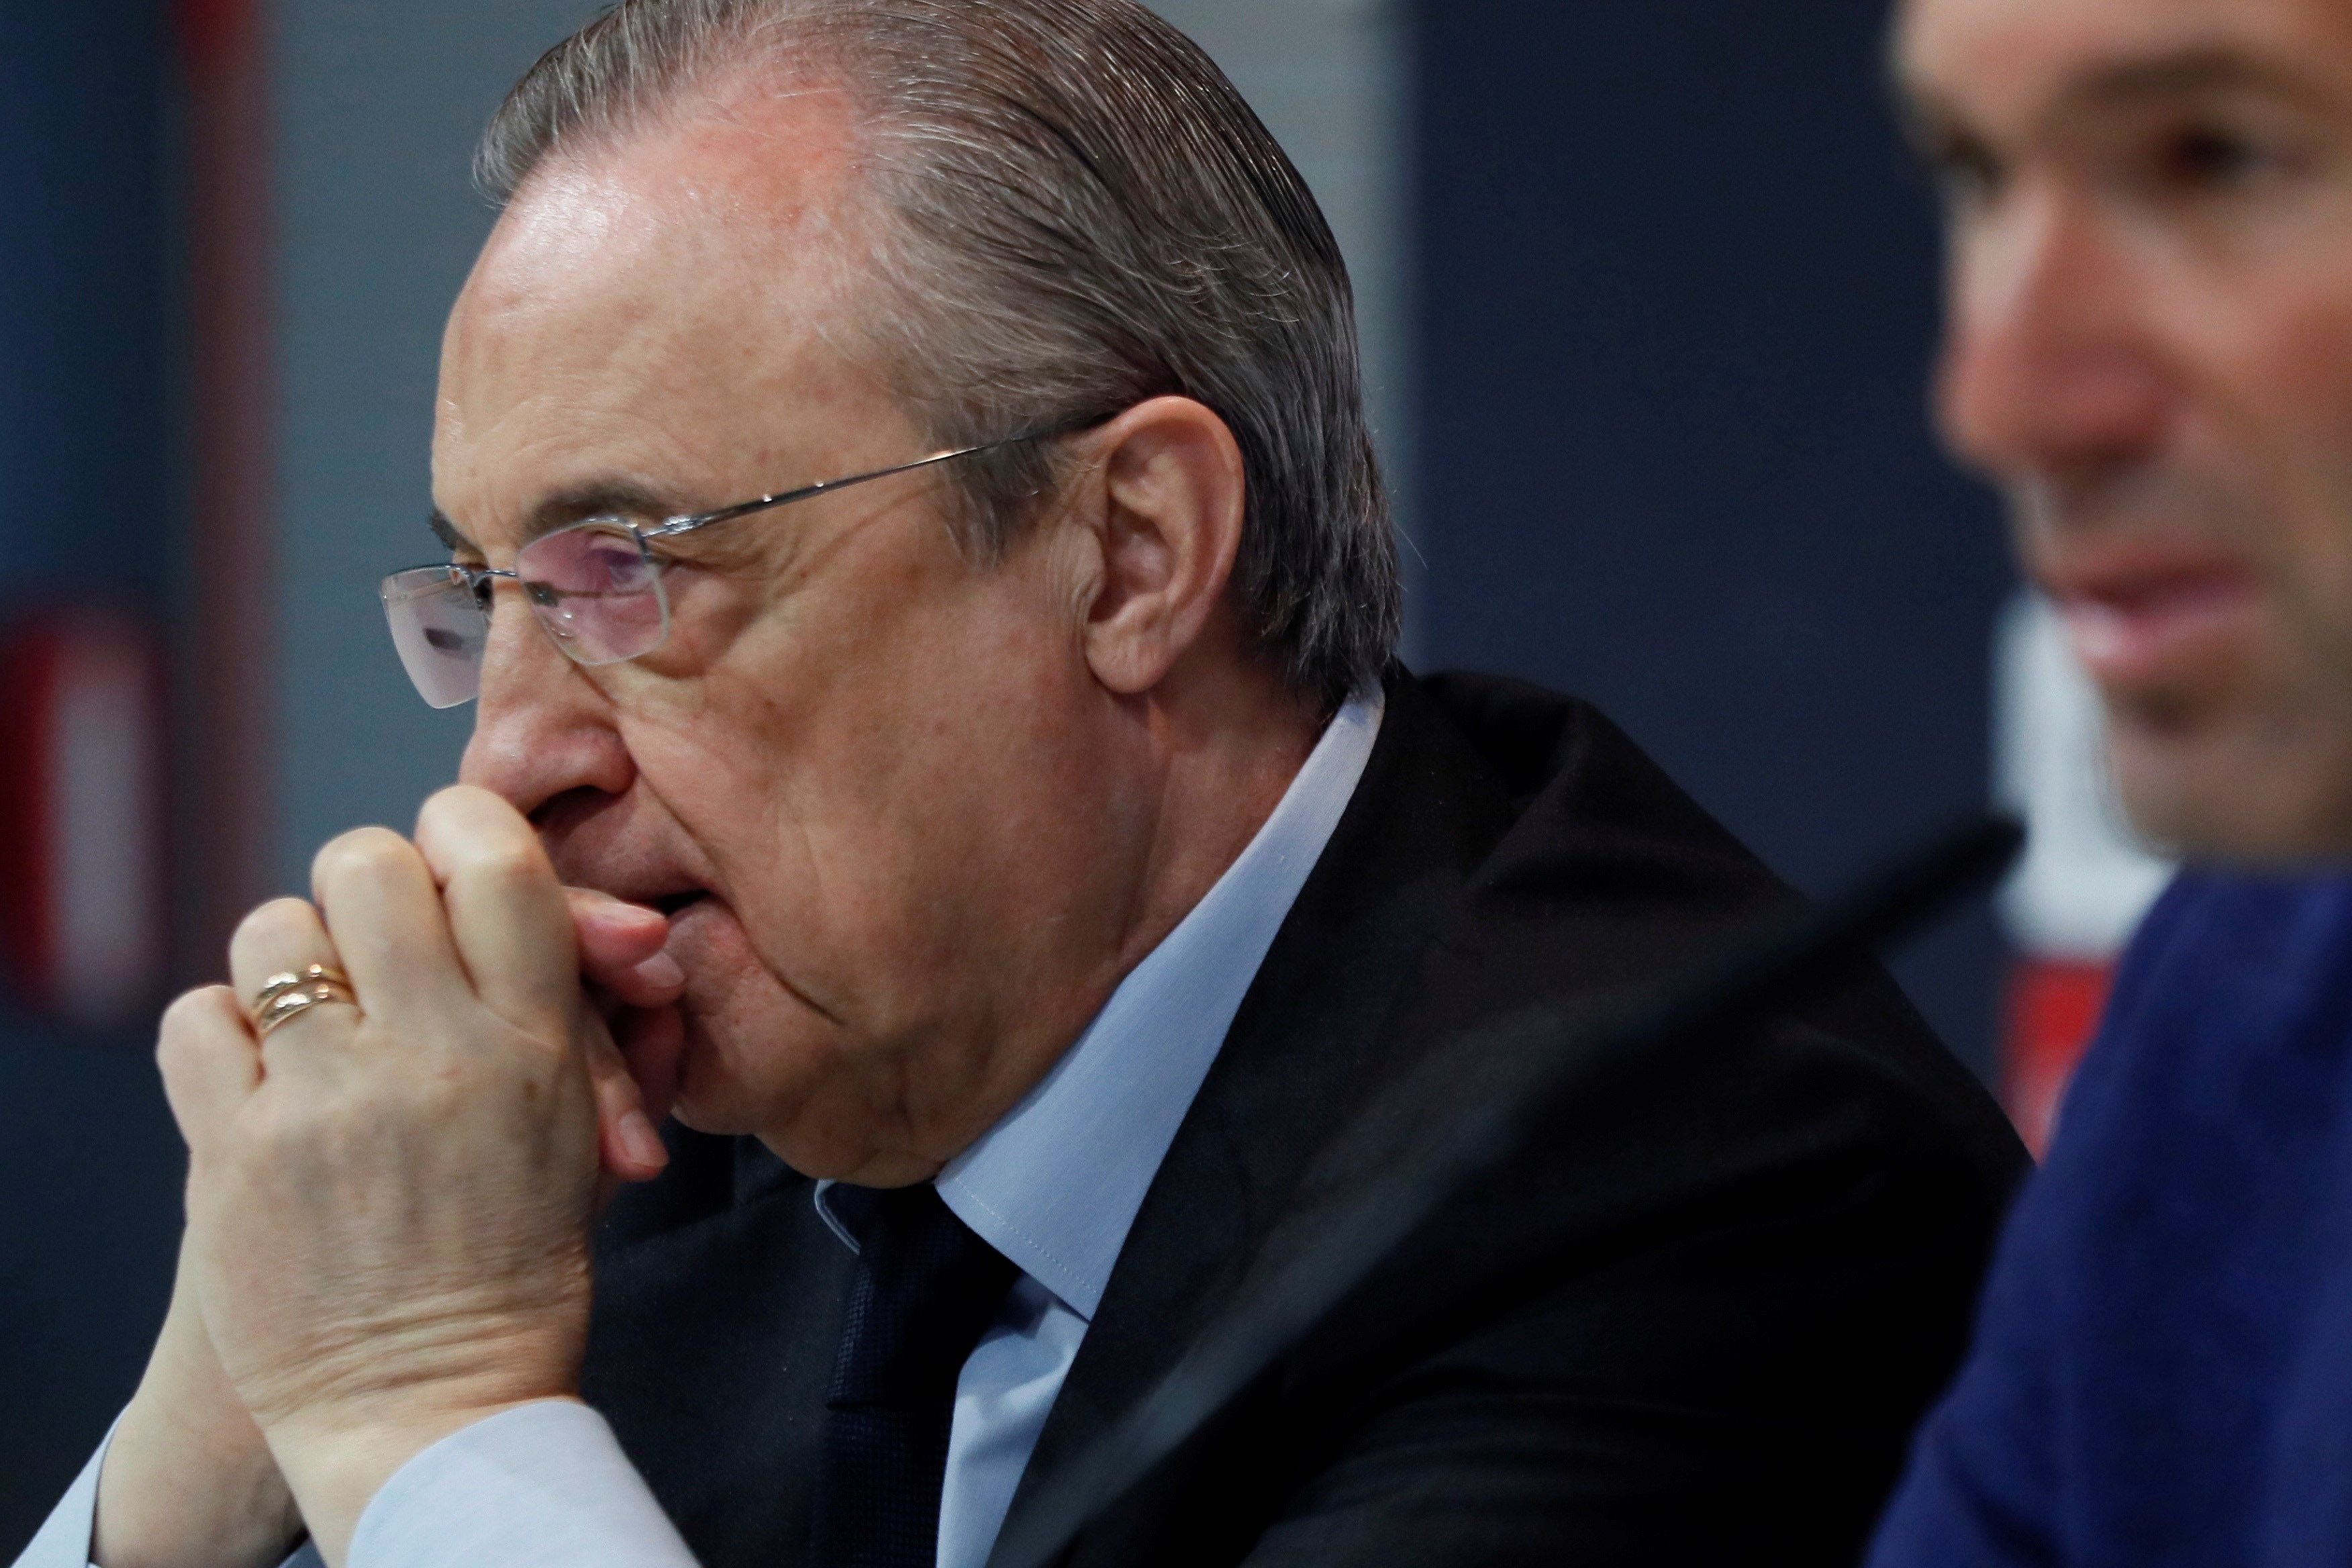 Negociació a Itàlia d'emissaris de Florentino Pérez perquè no vagi al Barça i apropar-lo al Reial Madrid